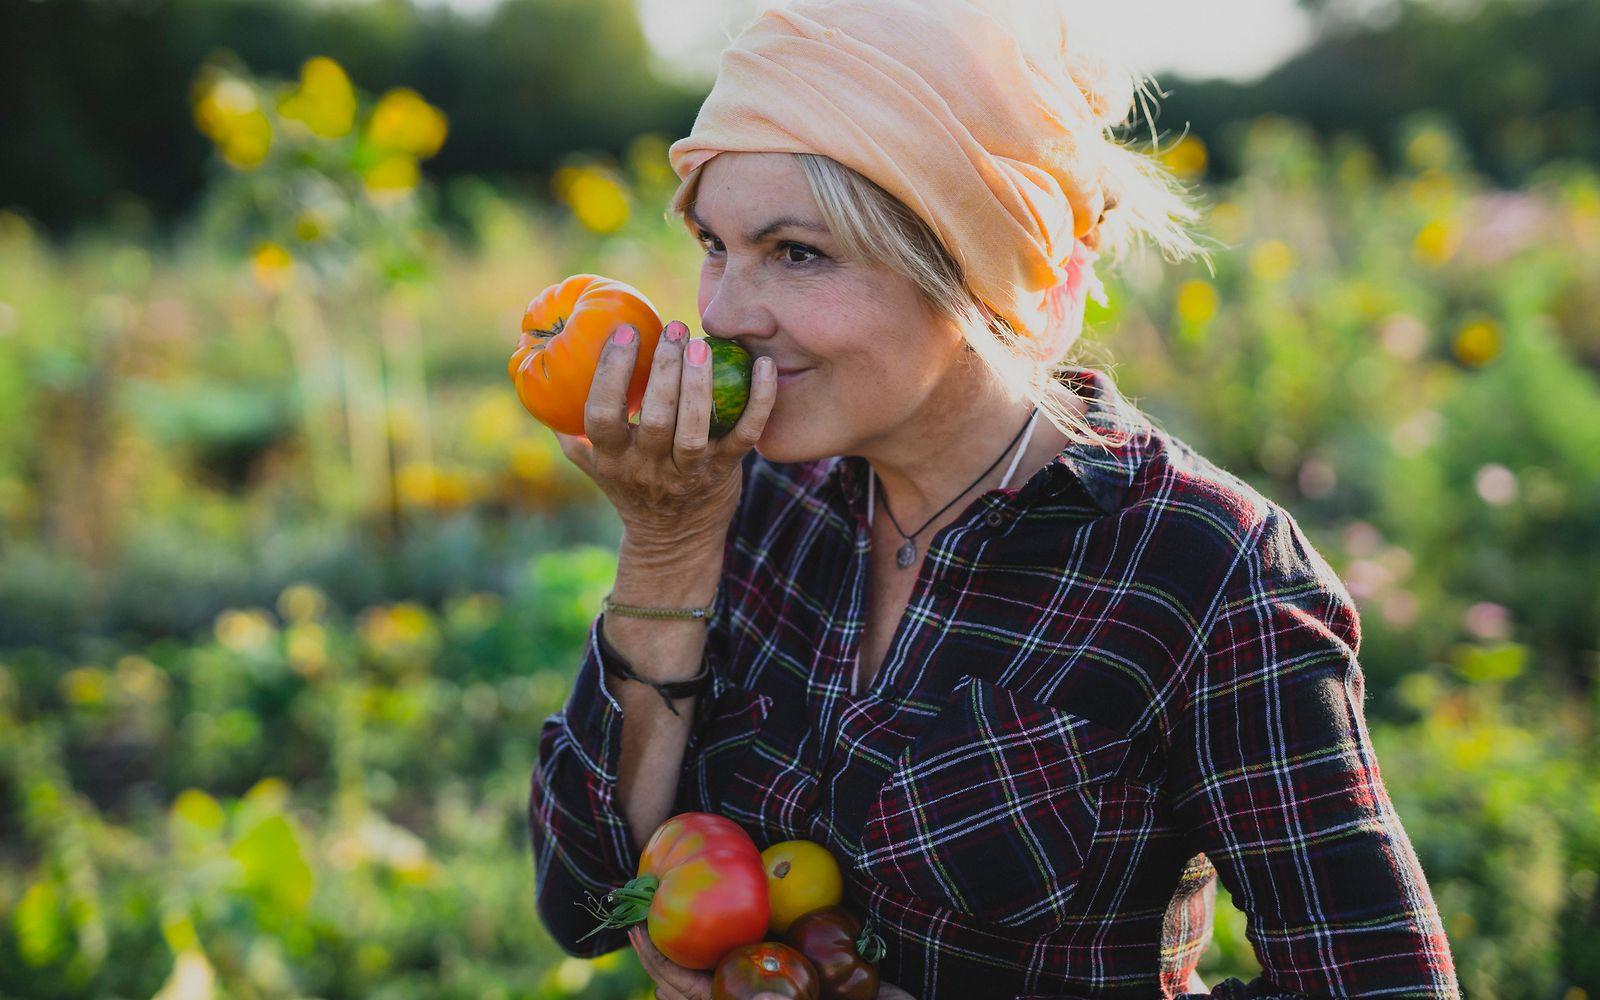 Wechseljahre und Bewerden: Eine Frau im mittleren Alter steht in einem Gemüsefeld und riecht an Tomaten